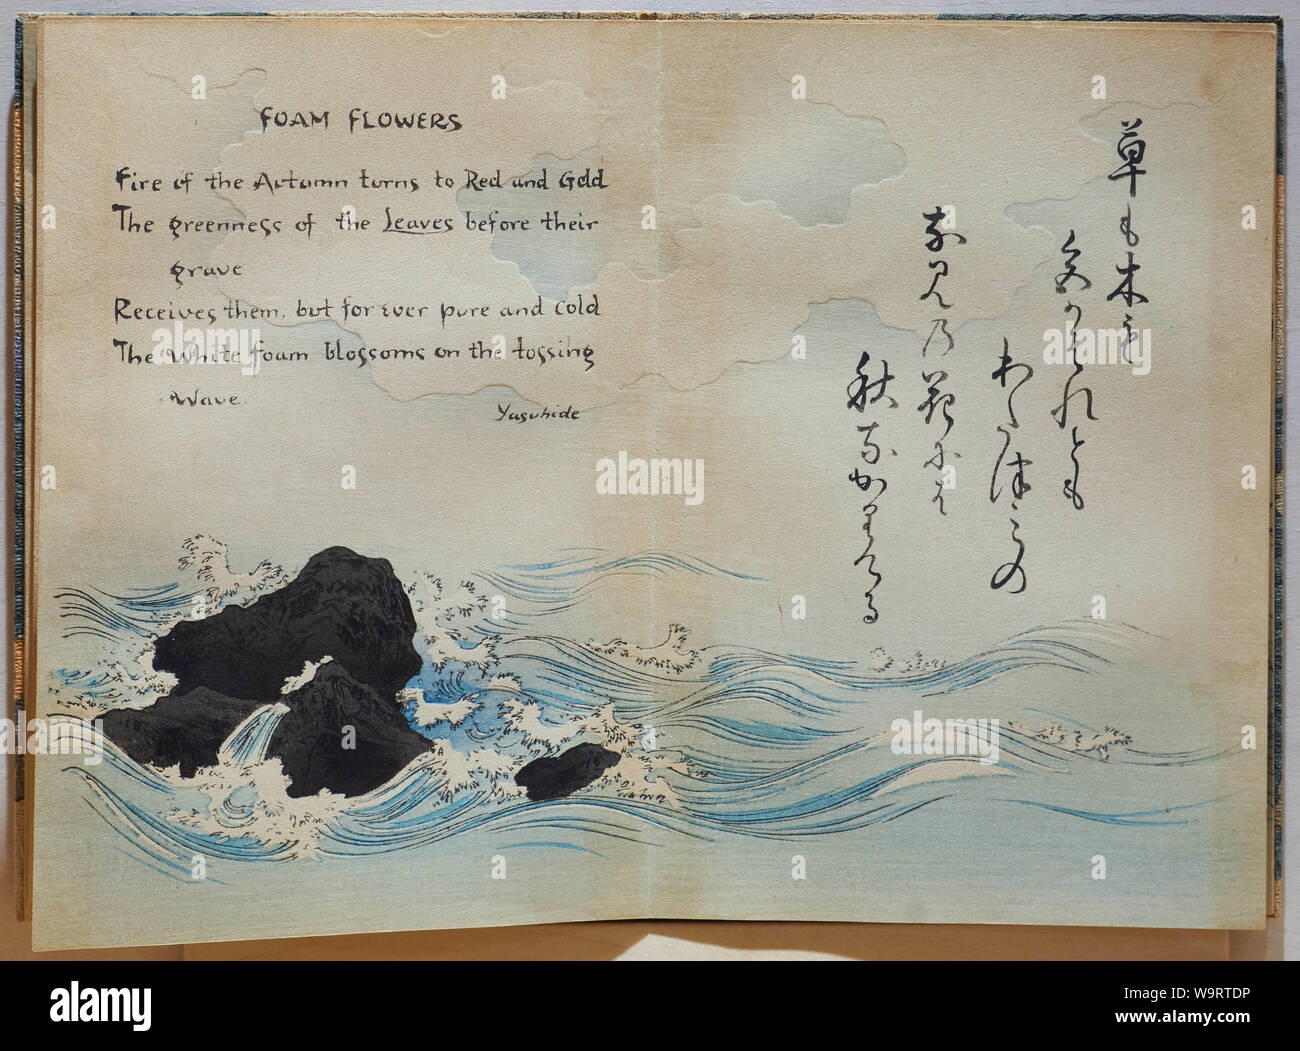 Traduit de la poésie et théâtre en mer en japonais imprimés sur bois Sword & Blossom poèmes livre publié par Hasegawa au début des années 1900 (20e siècle). Banque D'Images